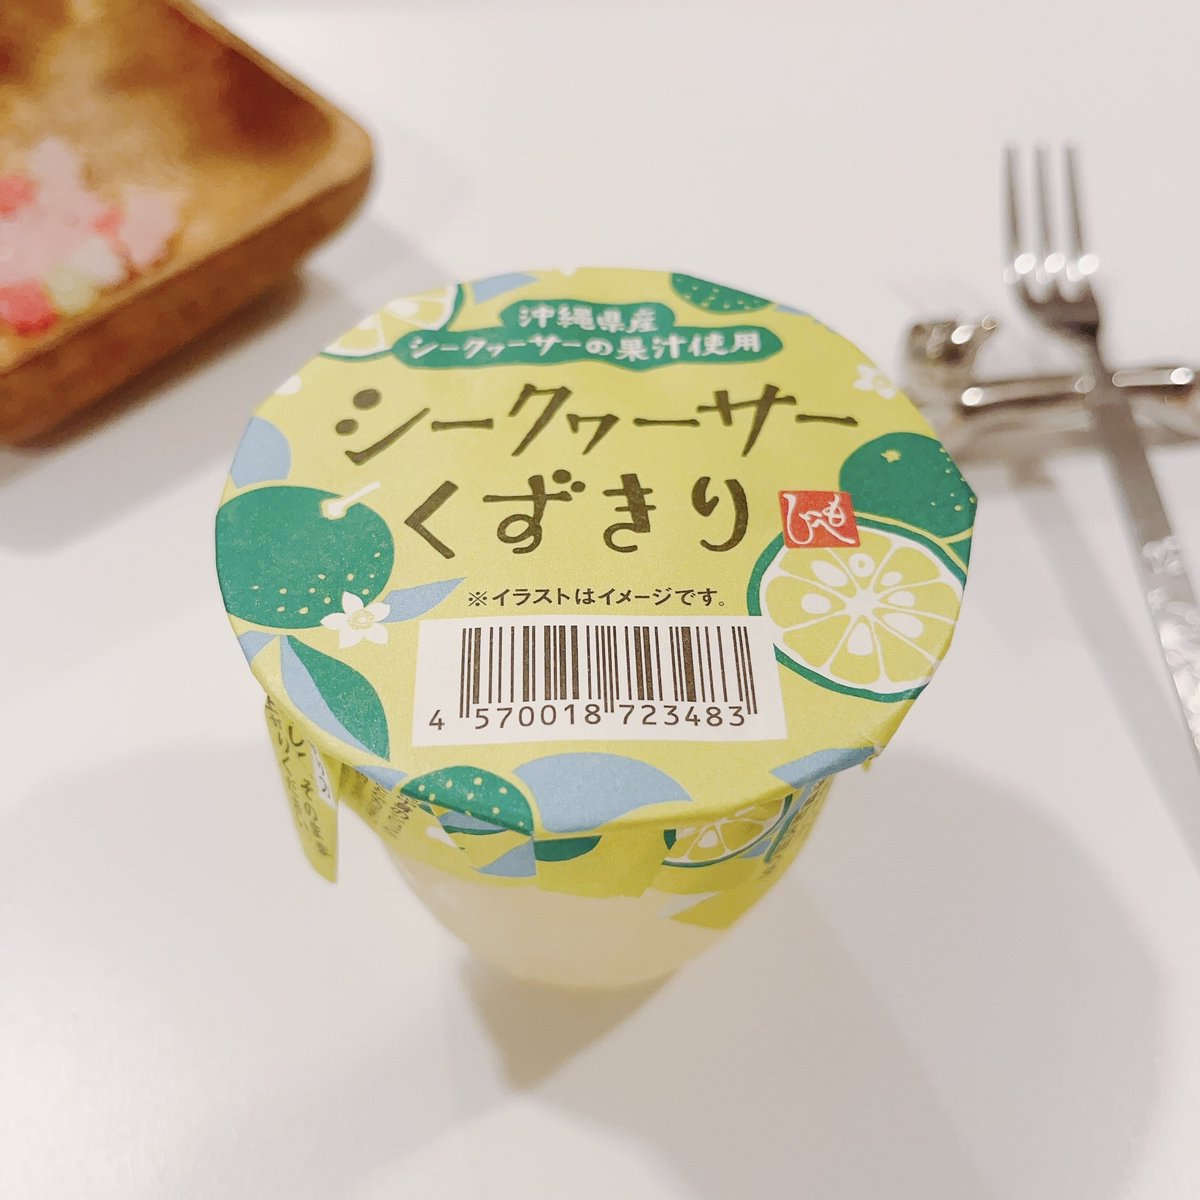 「【カルディ】ちゅるちゅる食感がたまらない!甘酸っぱさがクセになる「爽やかスイーツ」|BuzzFeed Japanのイラスト